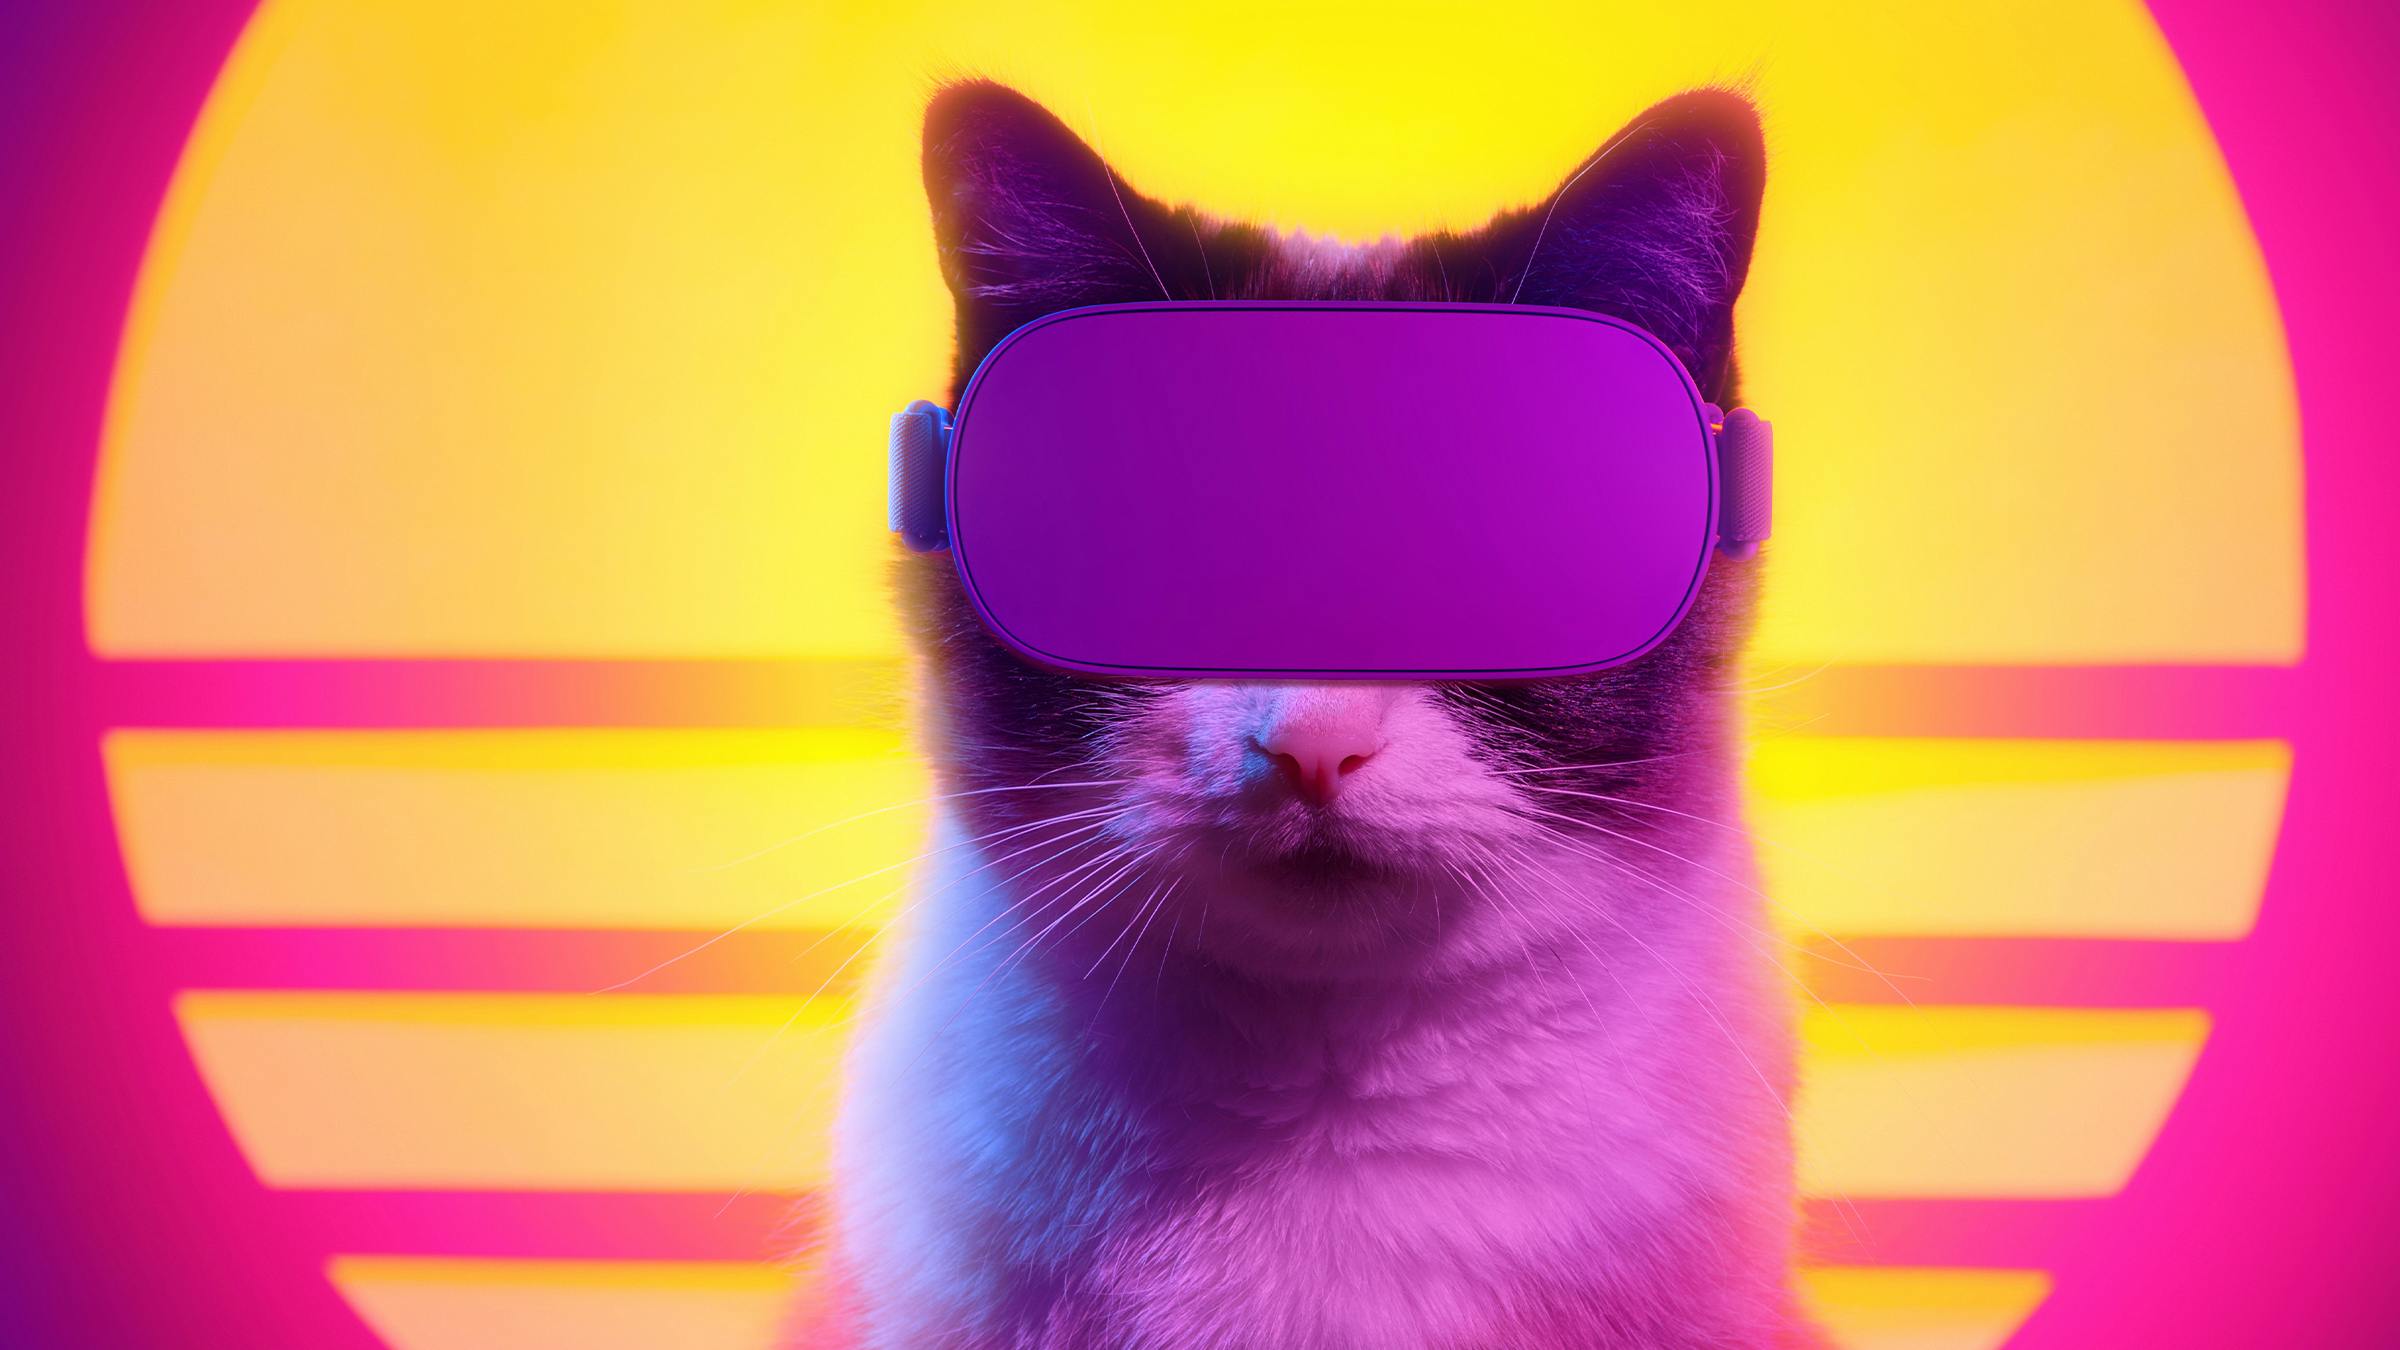 Das Bild zeigt eine Katze mit einer VR-Brille vor einer Sonne und einem pinkfarbenen Hintergrund